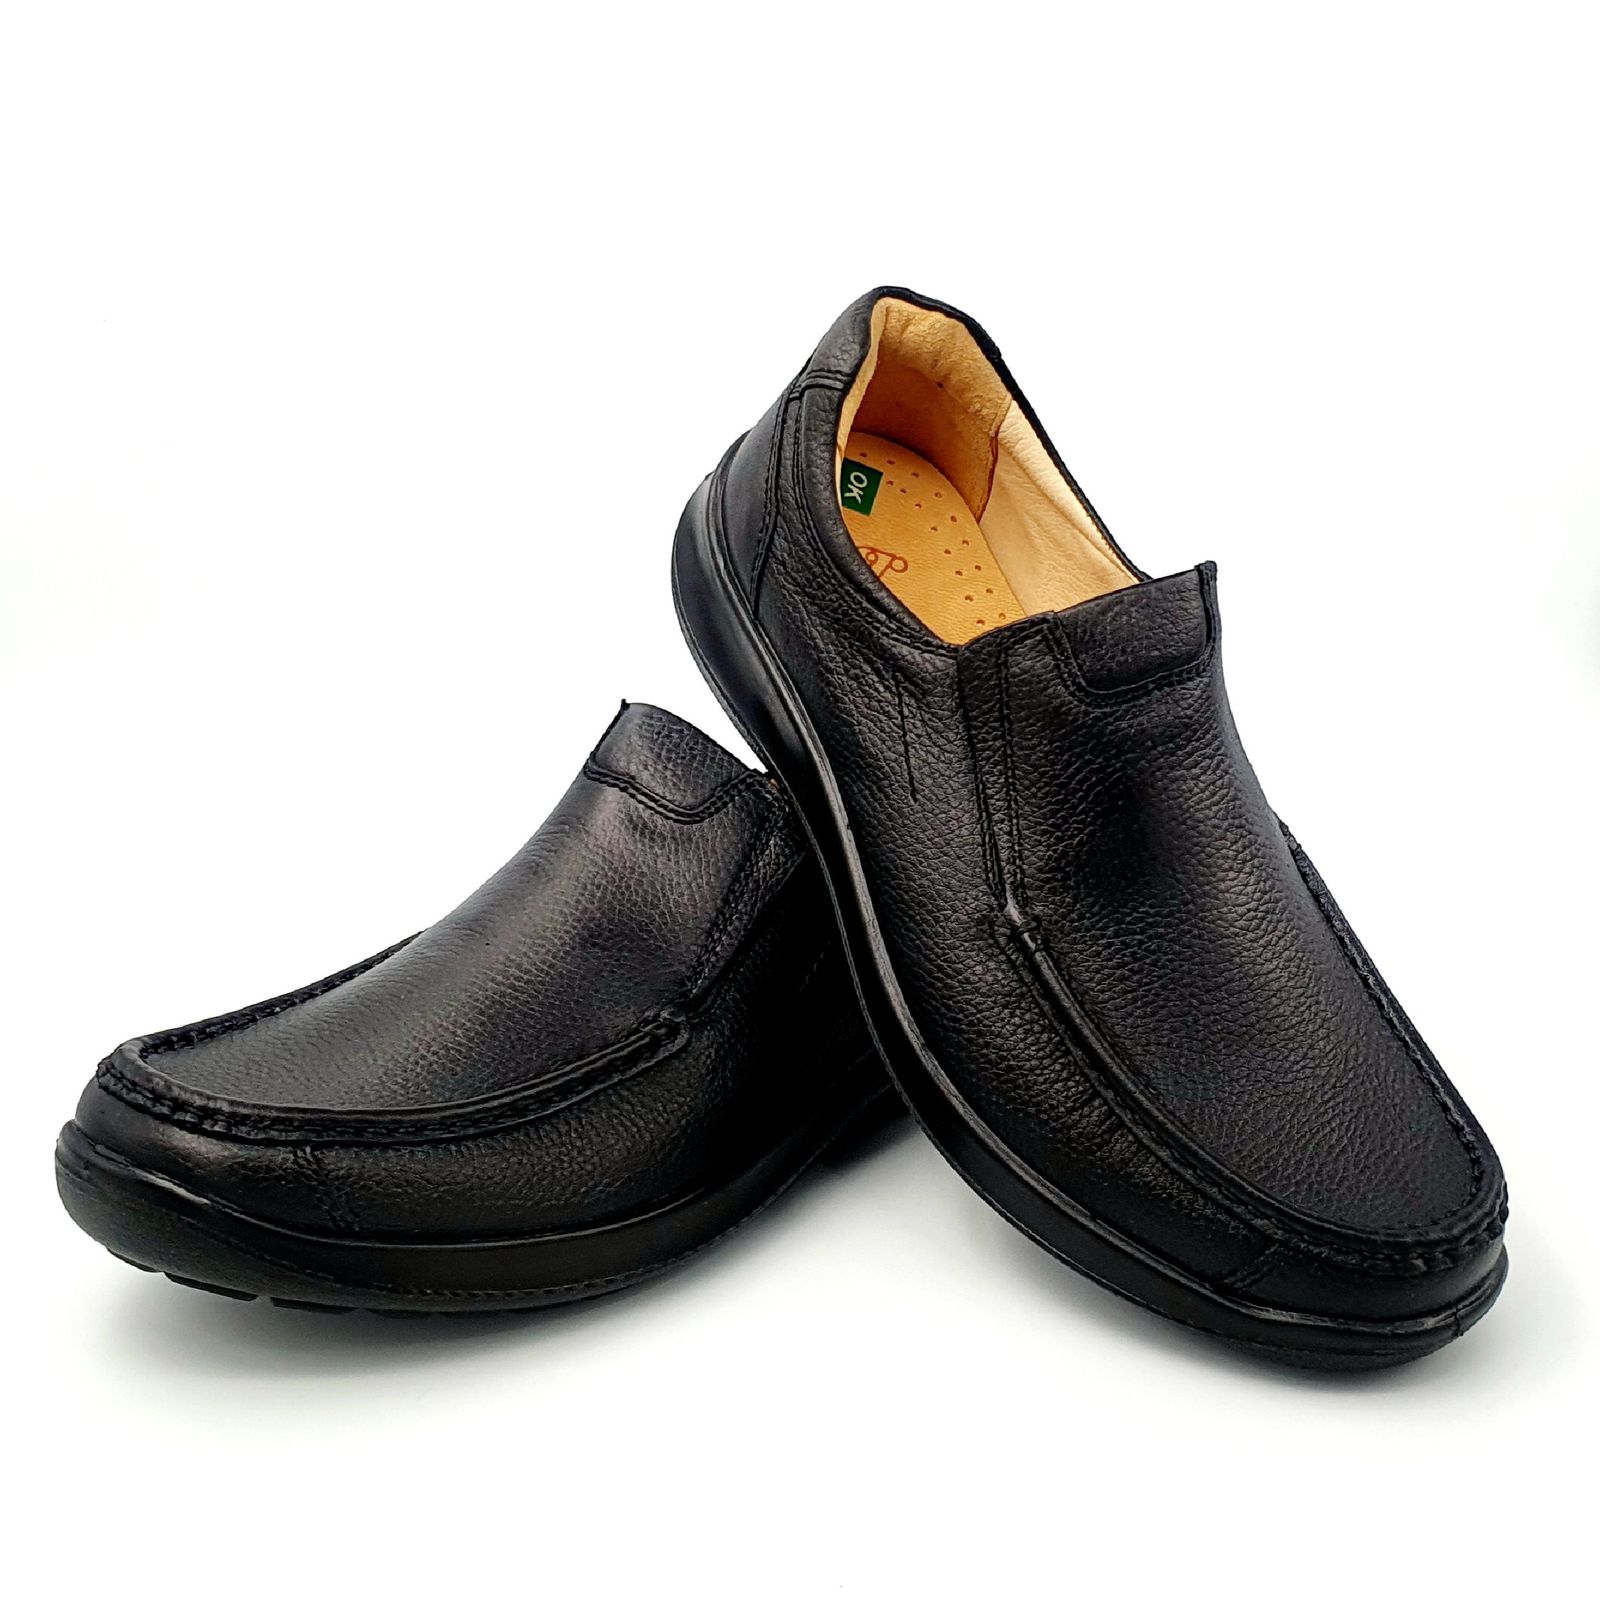 کفش روزمره مردانه شرکت کفش البرز مدل KV کد 2383-2 -  - 4